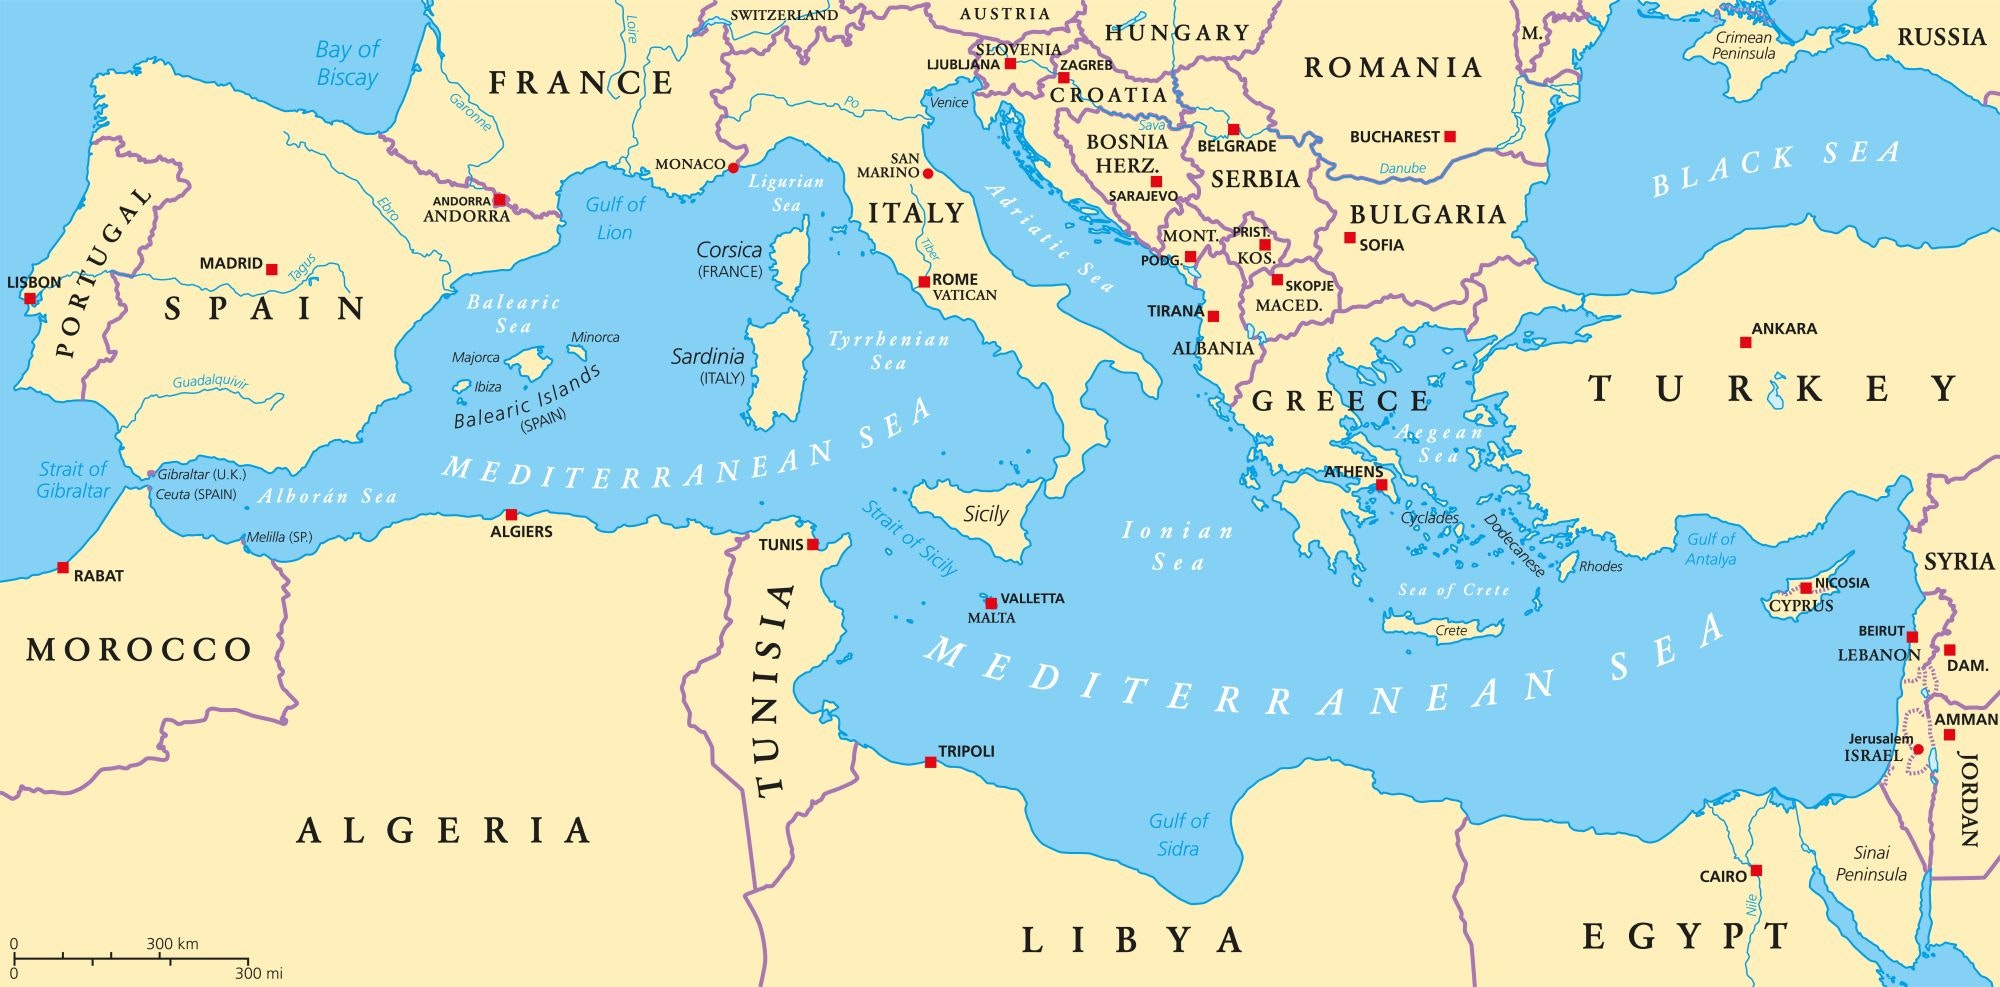 Kartta Välimerestä ja ympäröivästä maasta